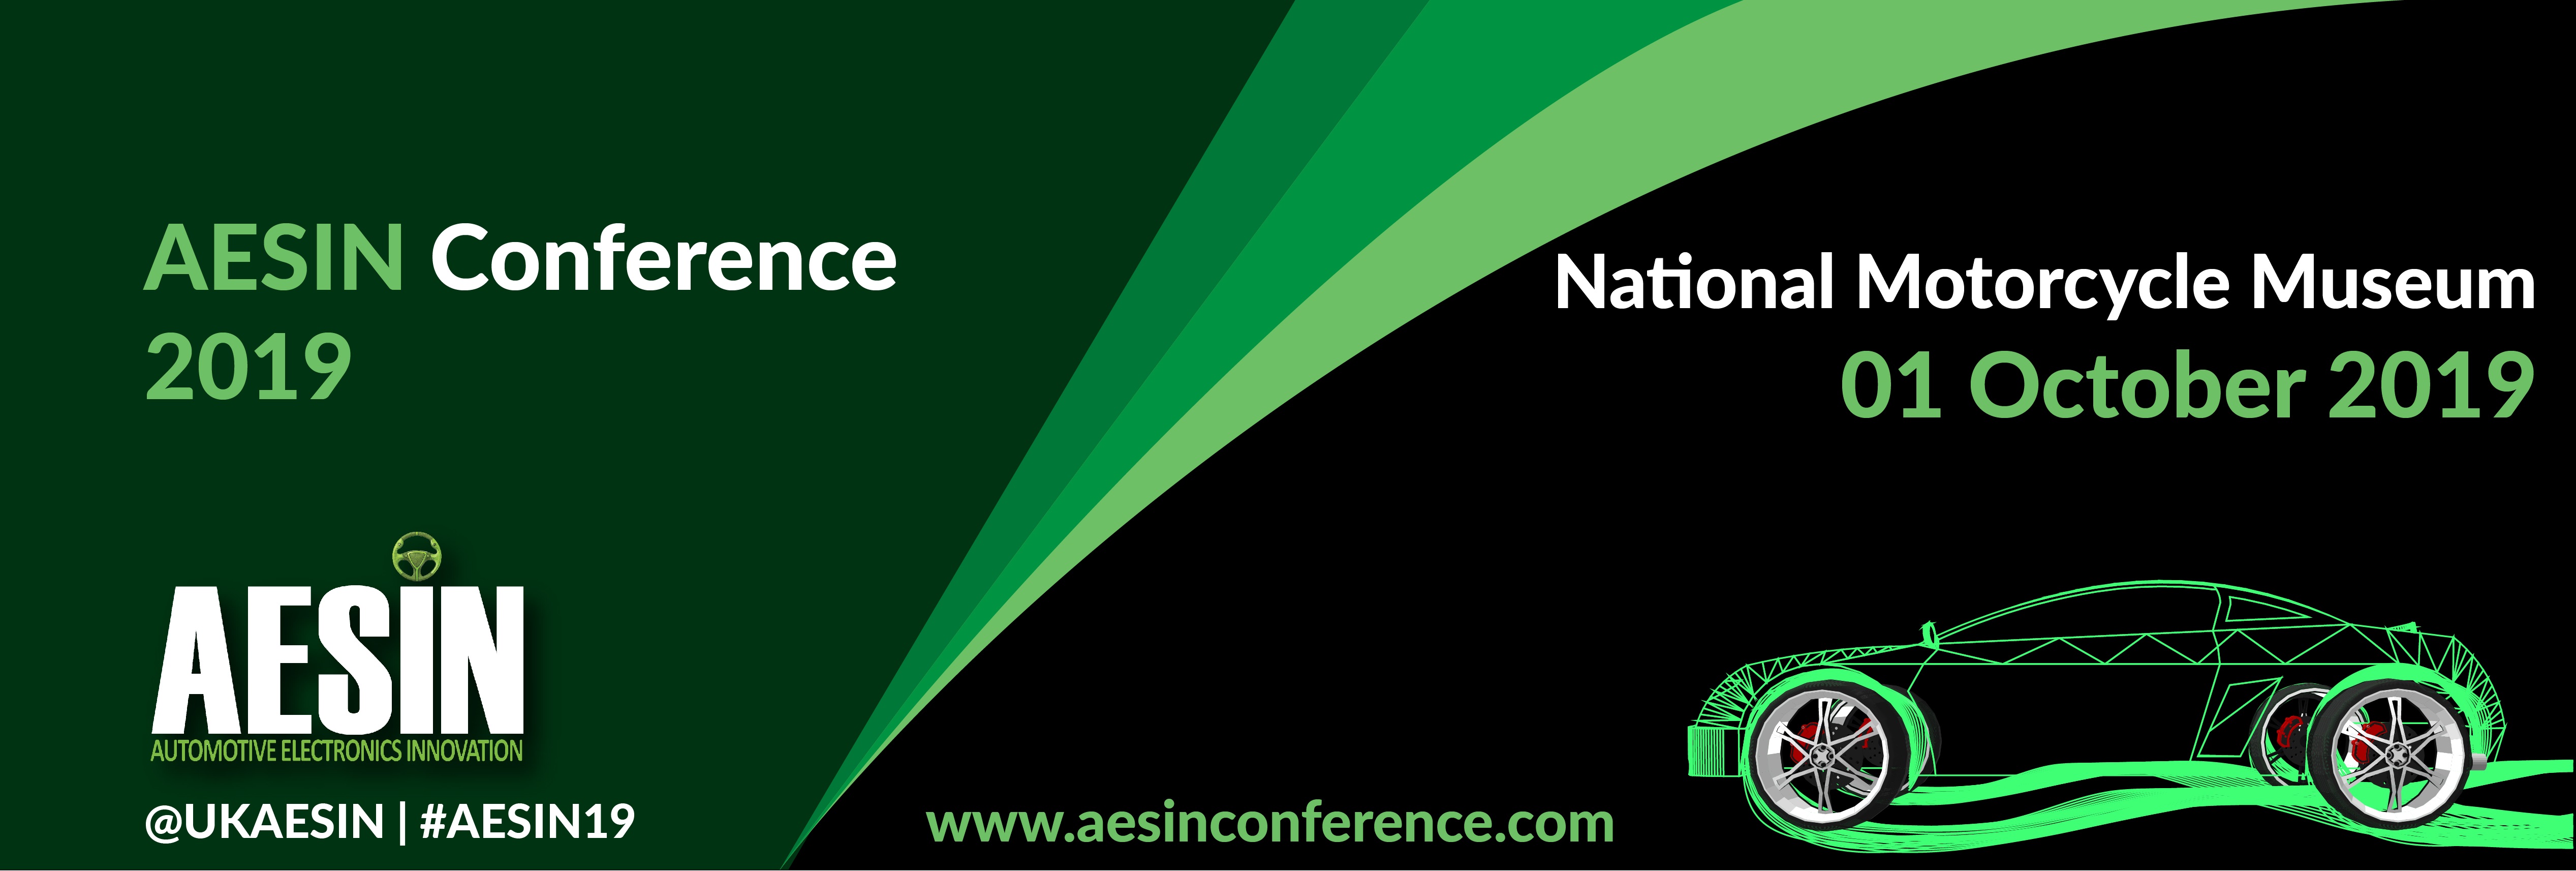 AESIN Banner 2019.jpg